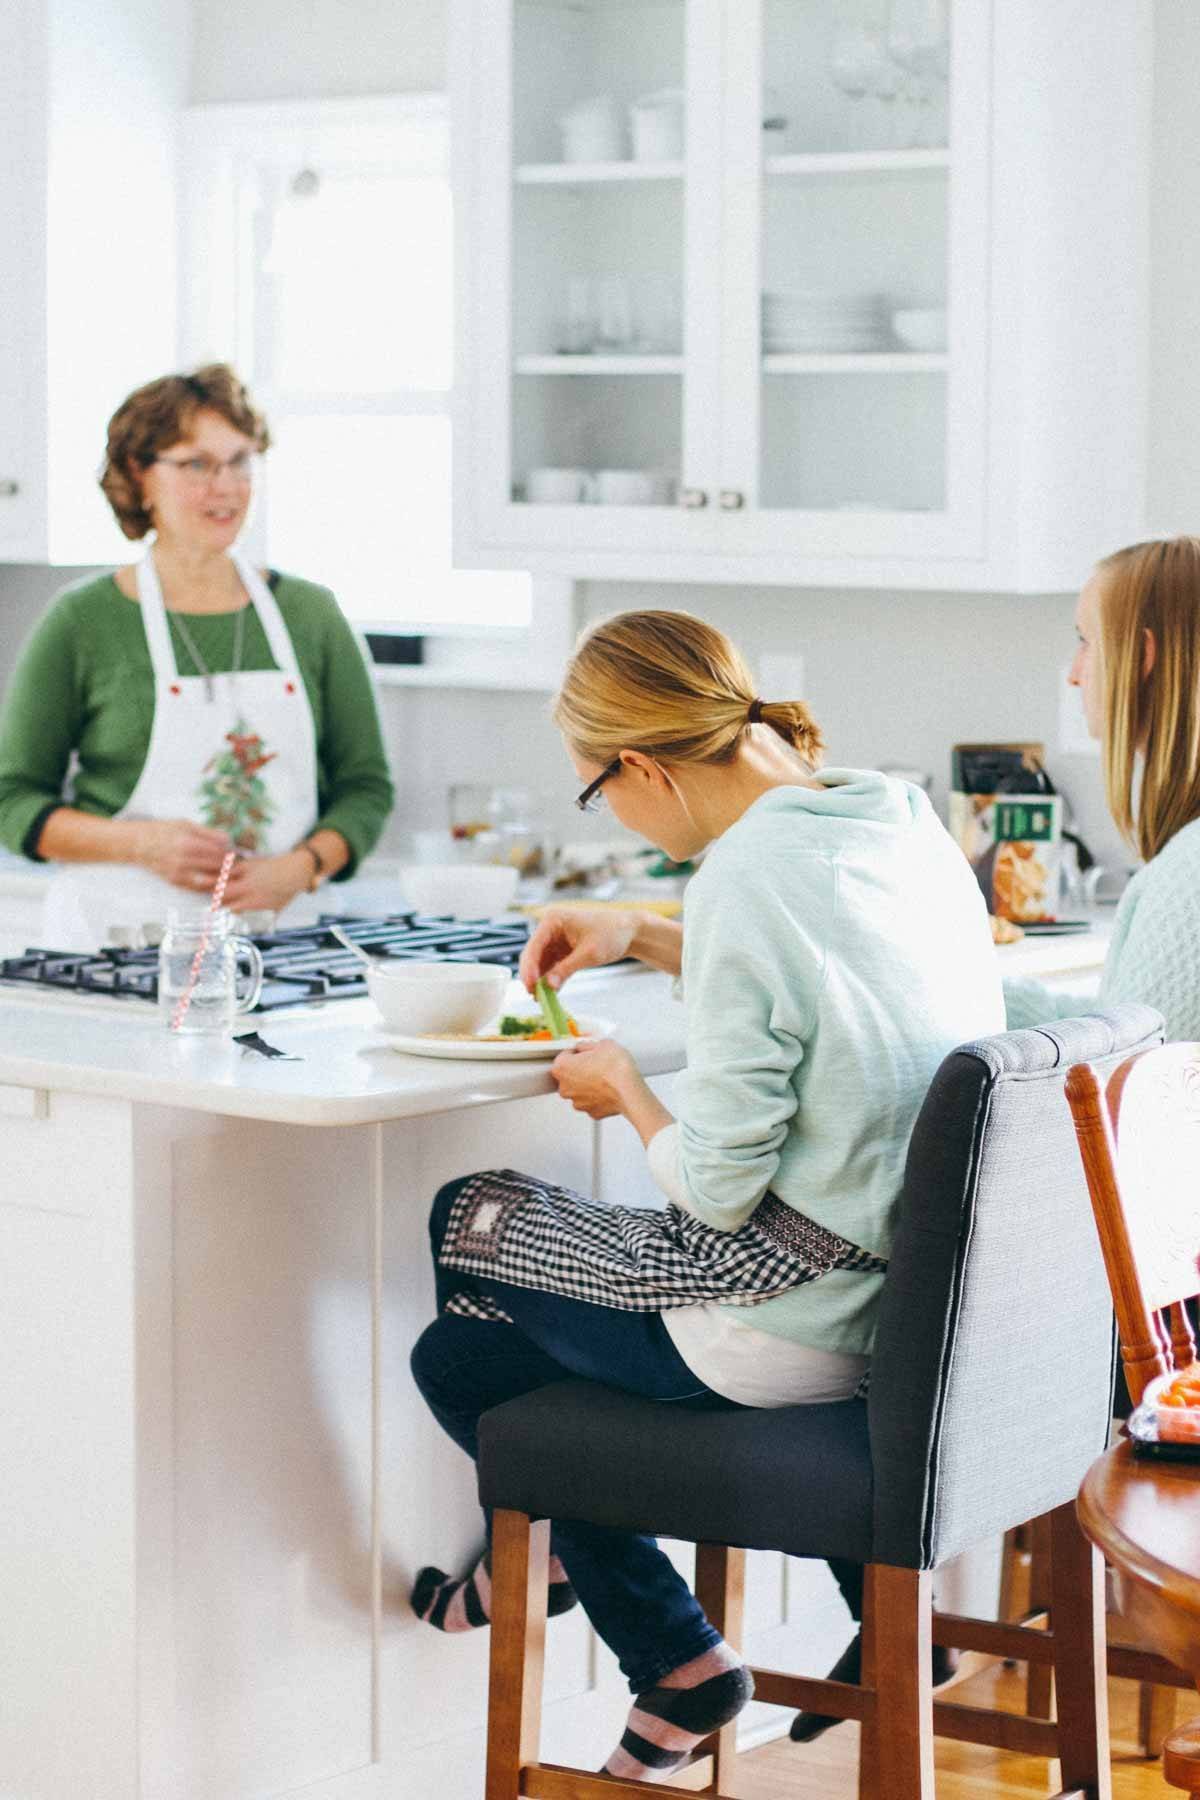 Women baking in a kitchen.